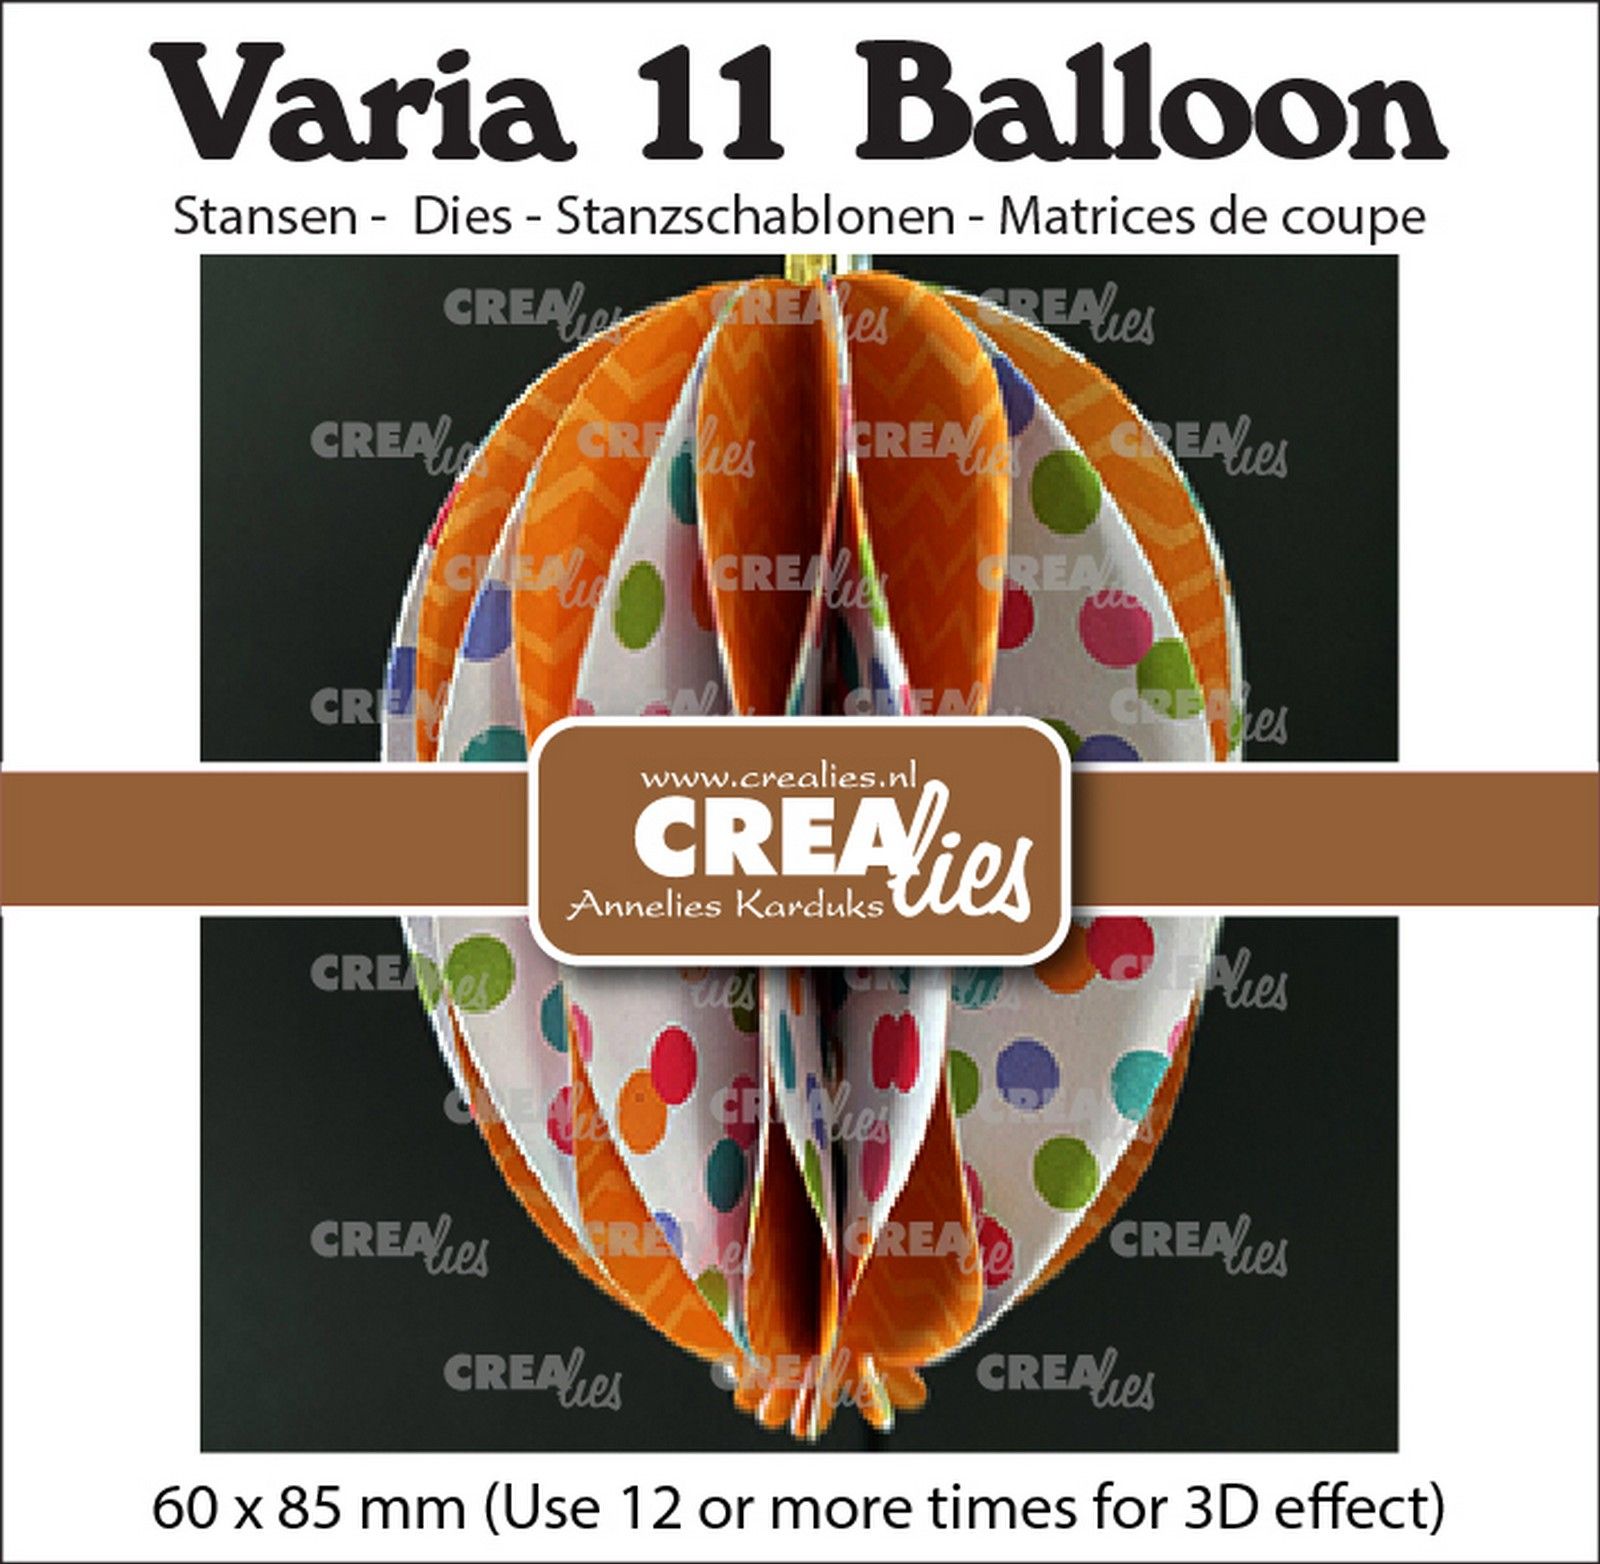 Crealies • Varia 3D Ballon